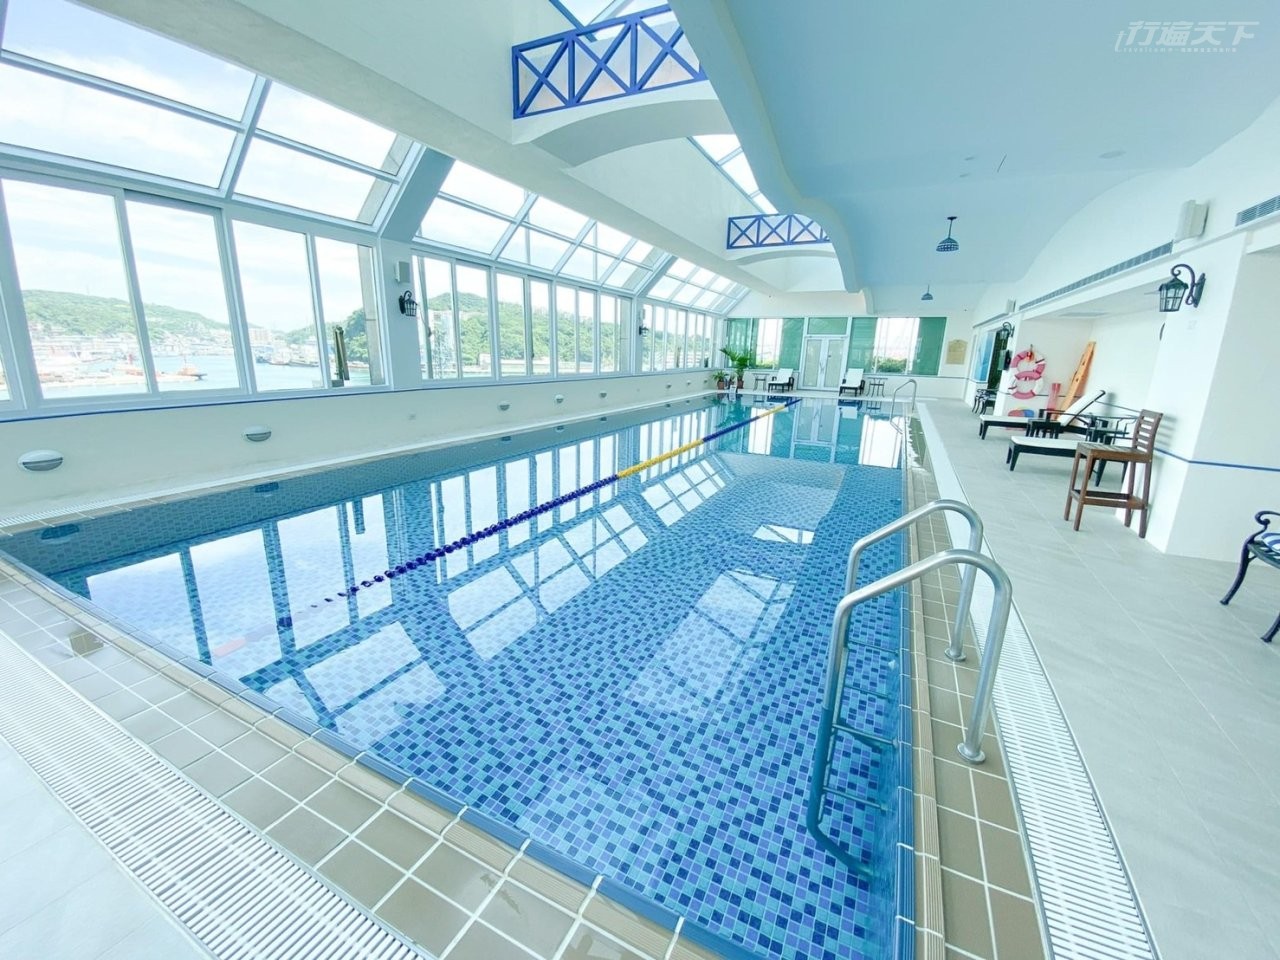 ▲空中室內溫水泳池是最棒的健身休憩空間。